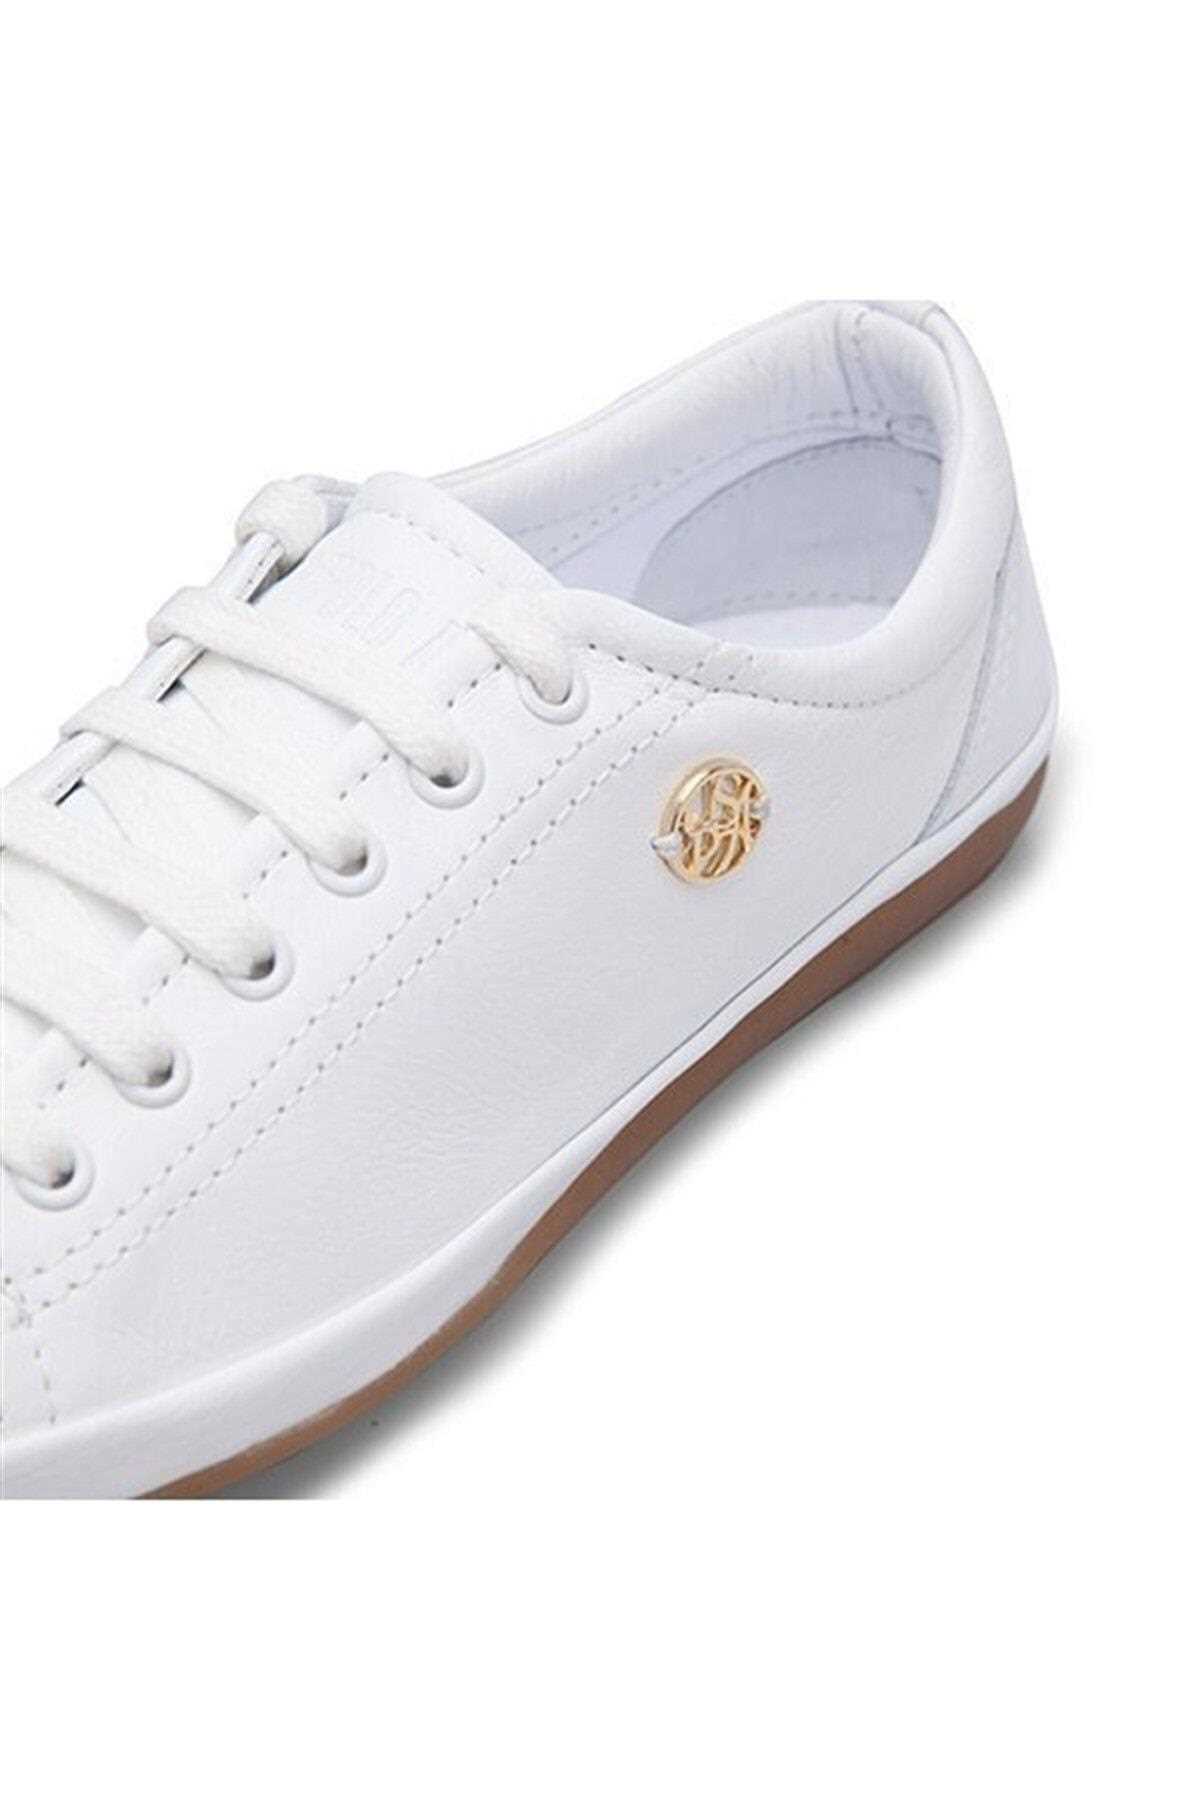 خرید انلاین کفش پیاده روی زنانه برند US Polo Assn رنگ سفید ty78164569